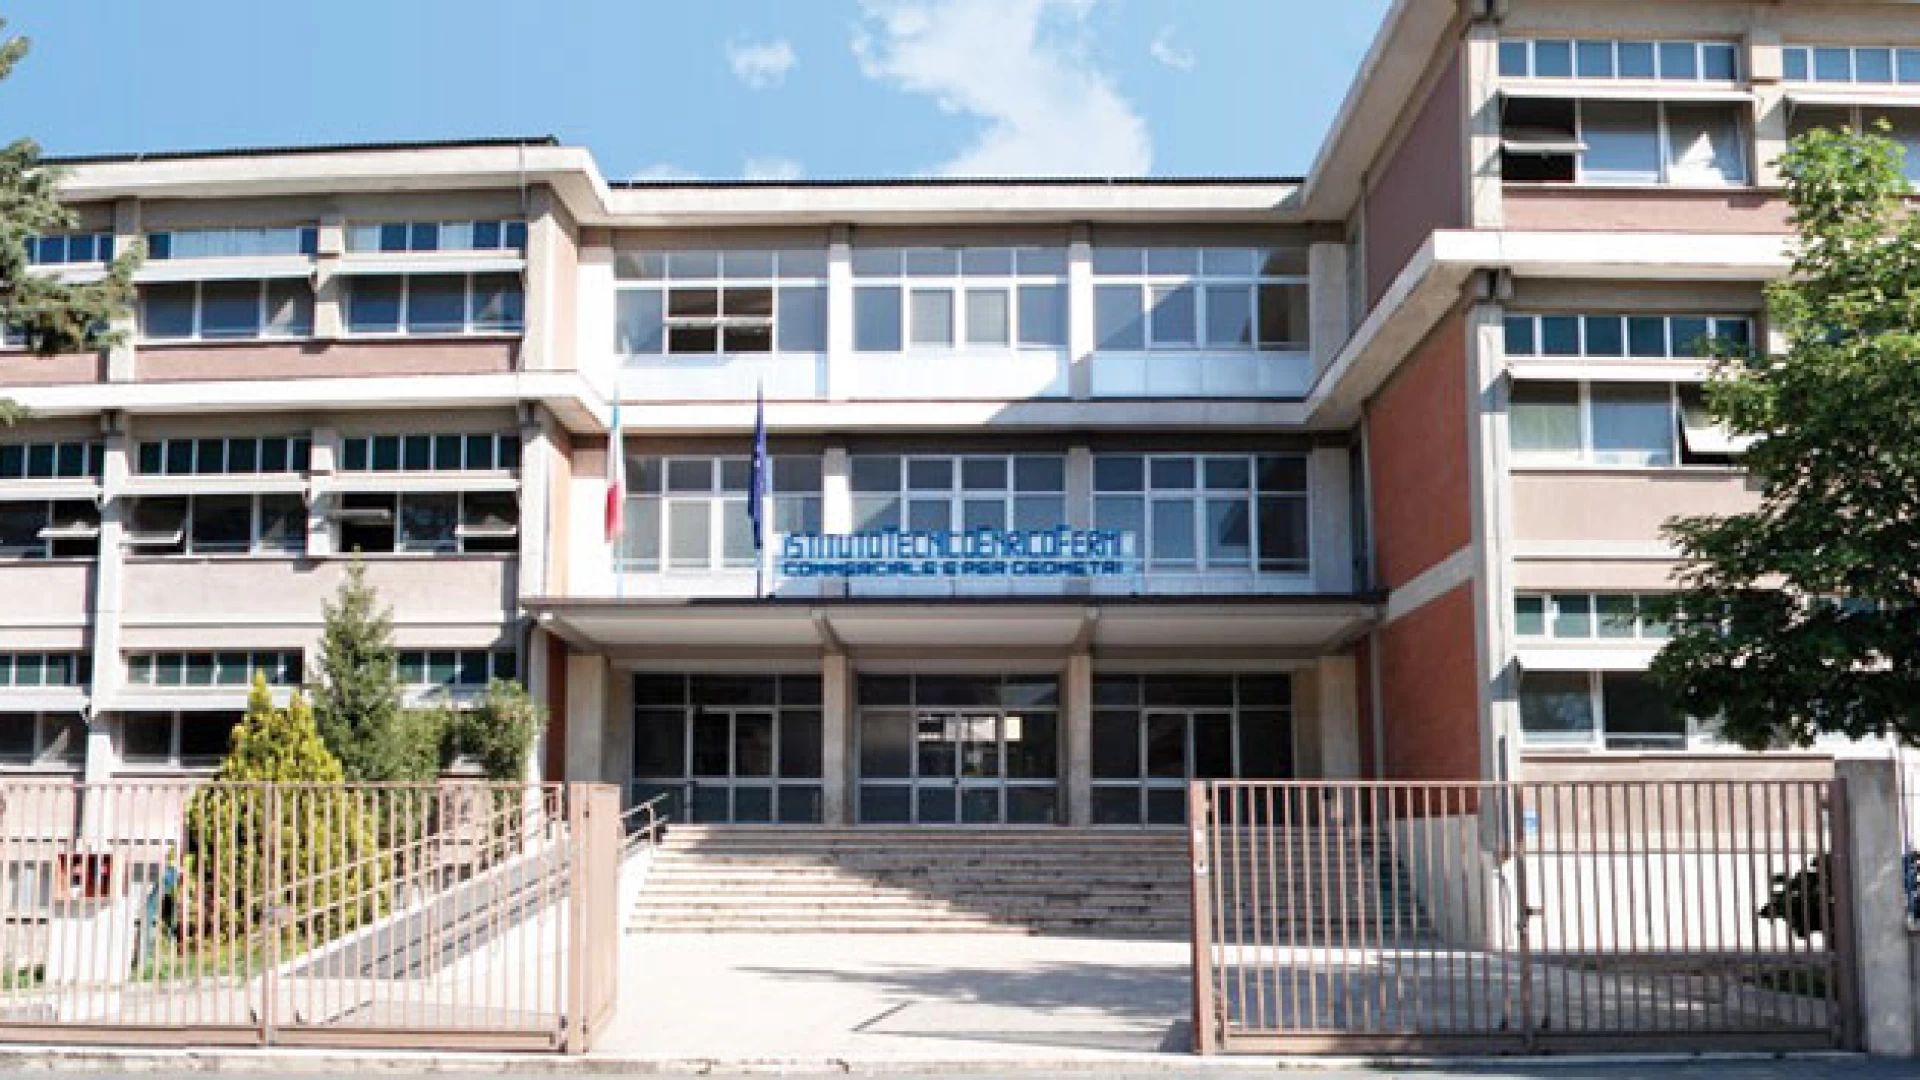 Isernia: “Nuove scuole subito in città”. Il comitato chiede interventi diretti all’amministrazione comunale.